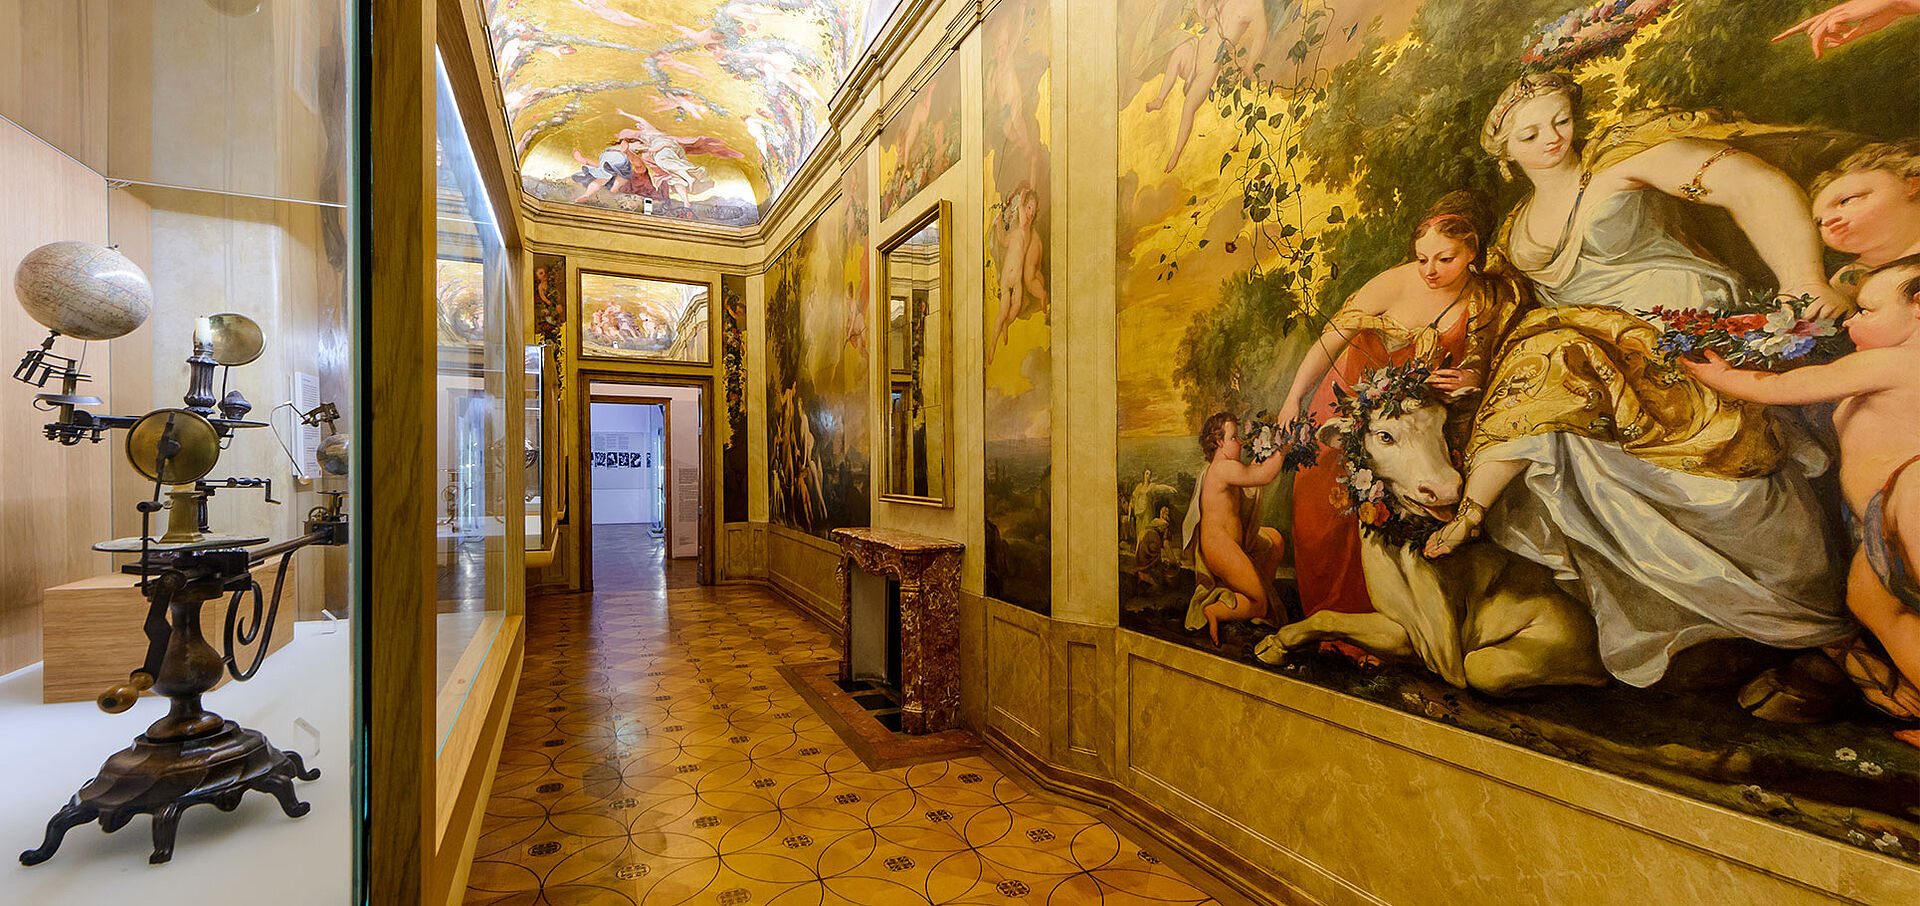 Foto von engem Raum mit Wandgemälden, Globen in Vitrinen und goldenen Wänden.